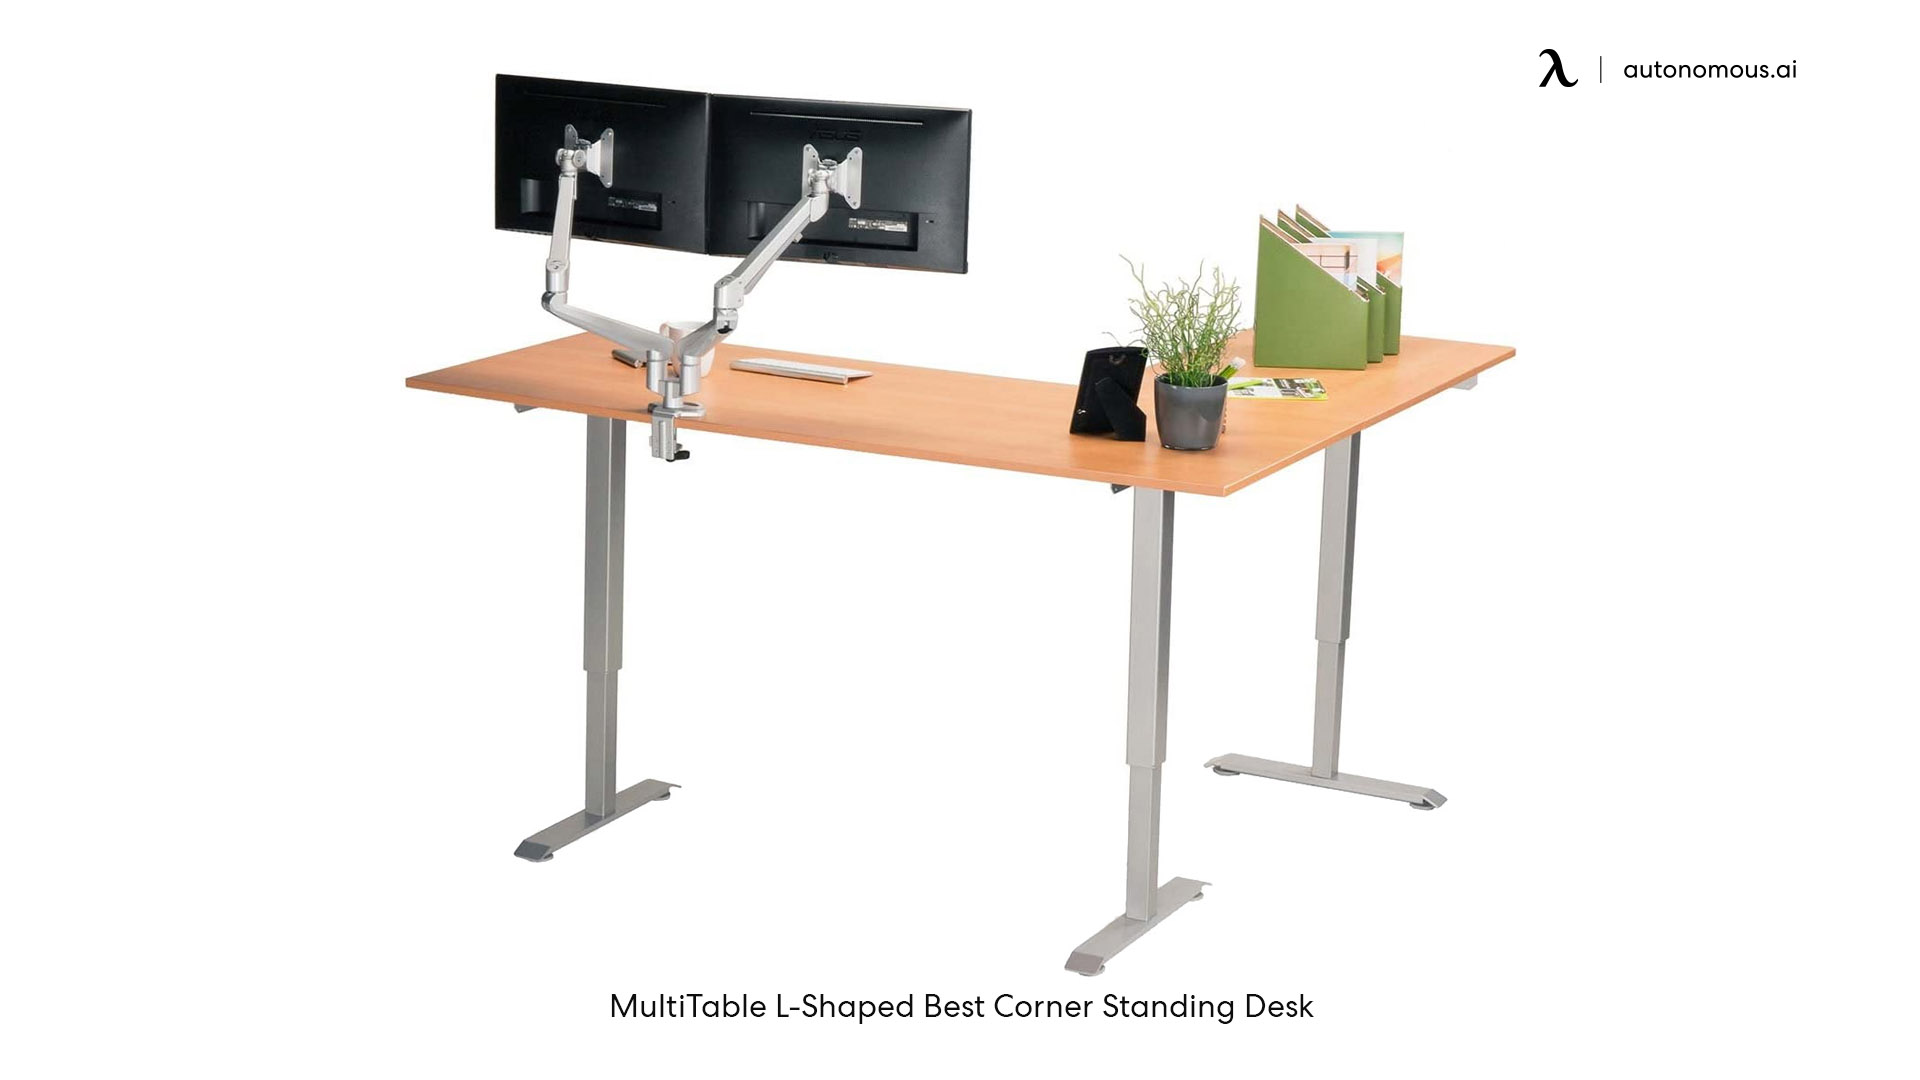 MultiTable L-Shaped Best Corner Standing Desk